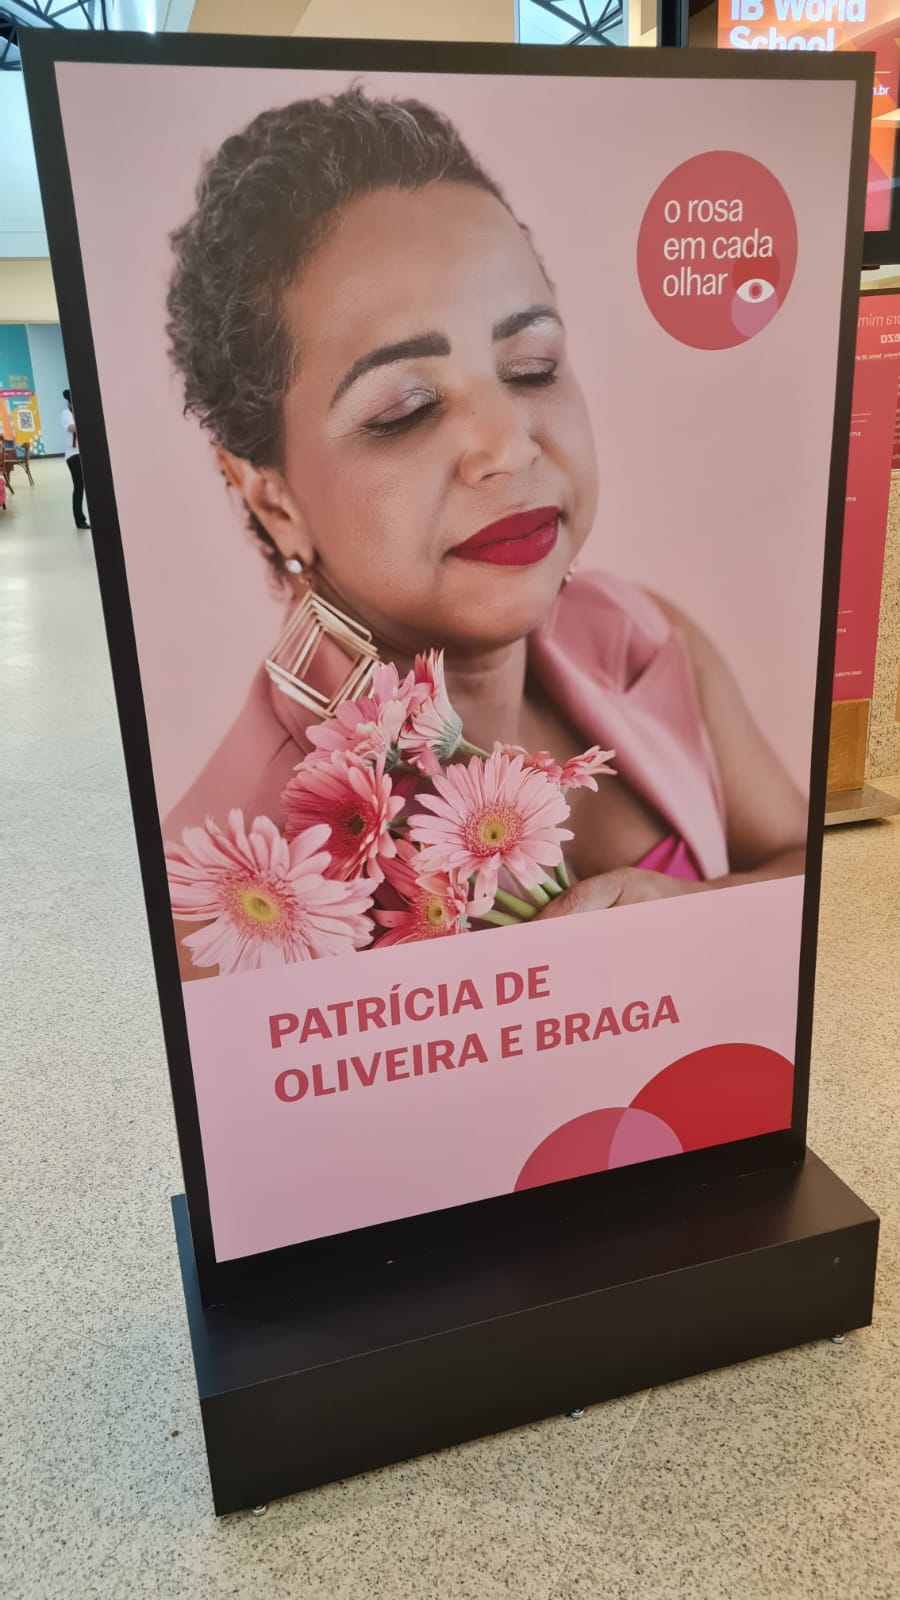 Patrícia de Oliveira Braga